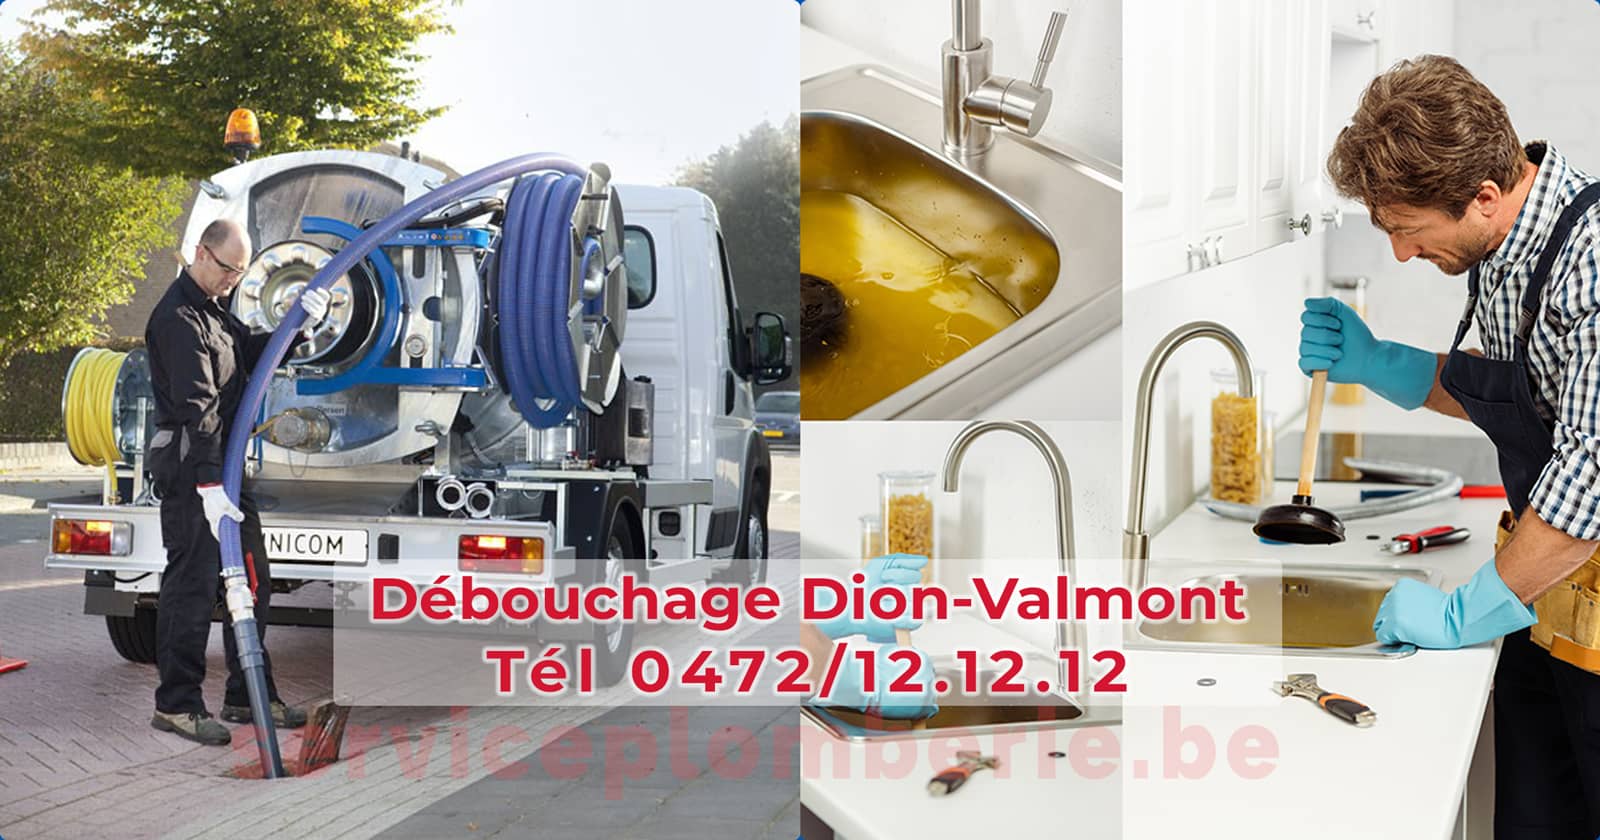 Débouchage Dion-Valmont d'égout Service Plomberie Tél 0472/12.12.12